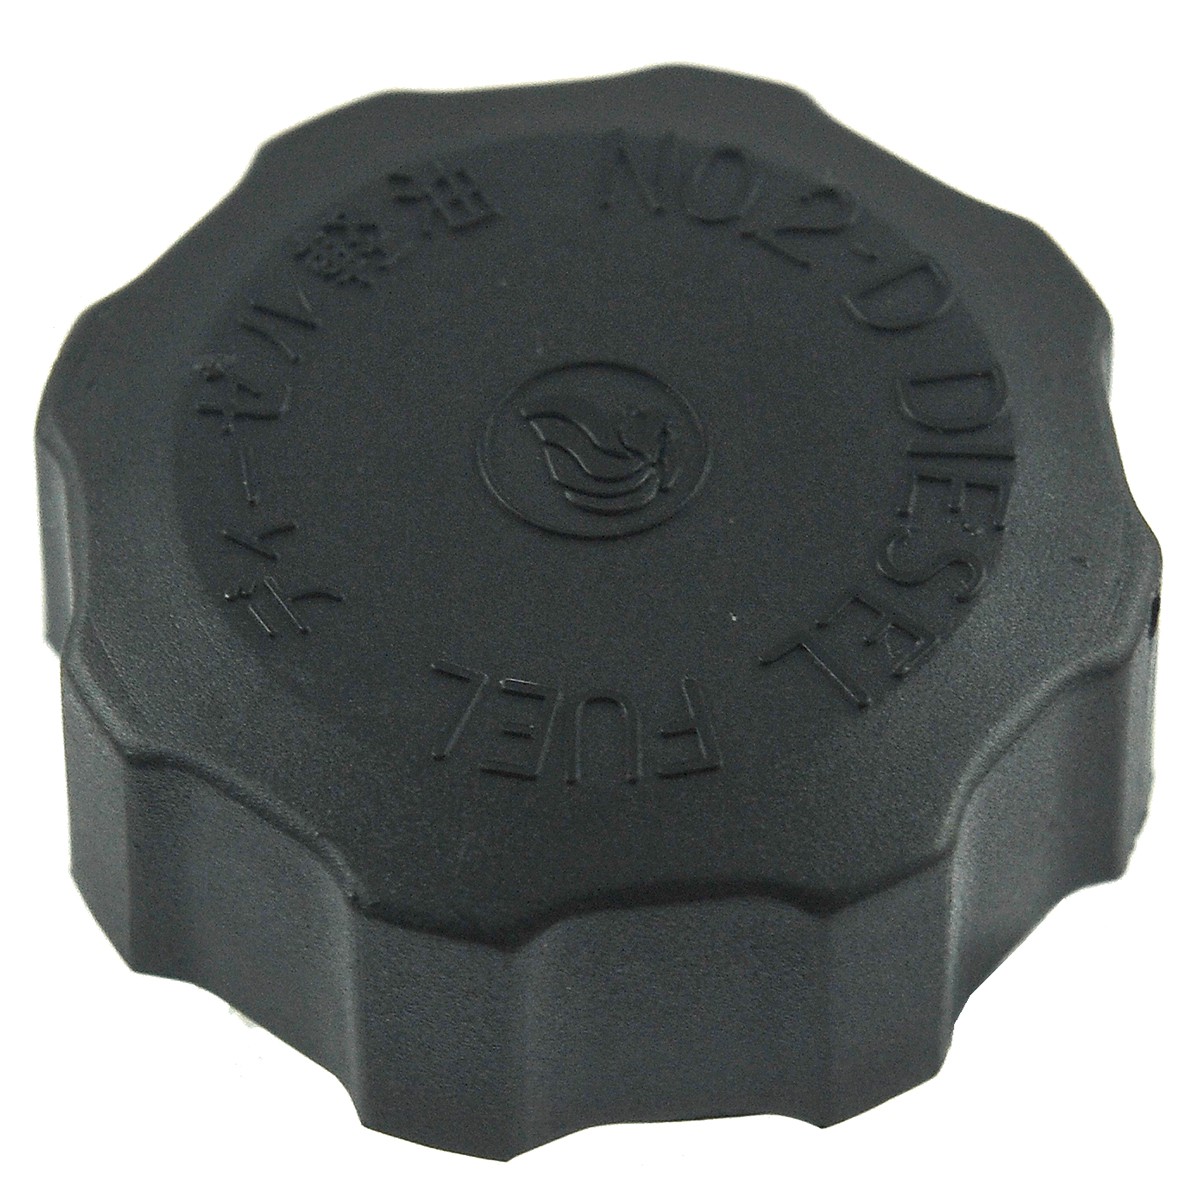 Fuel filler cap / 56 mm / Kubota B5001/B6000/B7001/L1500/L2000/L2202/L2402/L3408/ZB16/ZB17 / 66621-54821 / 5-17-103-03